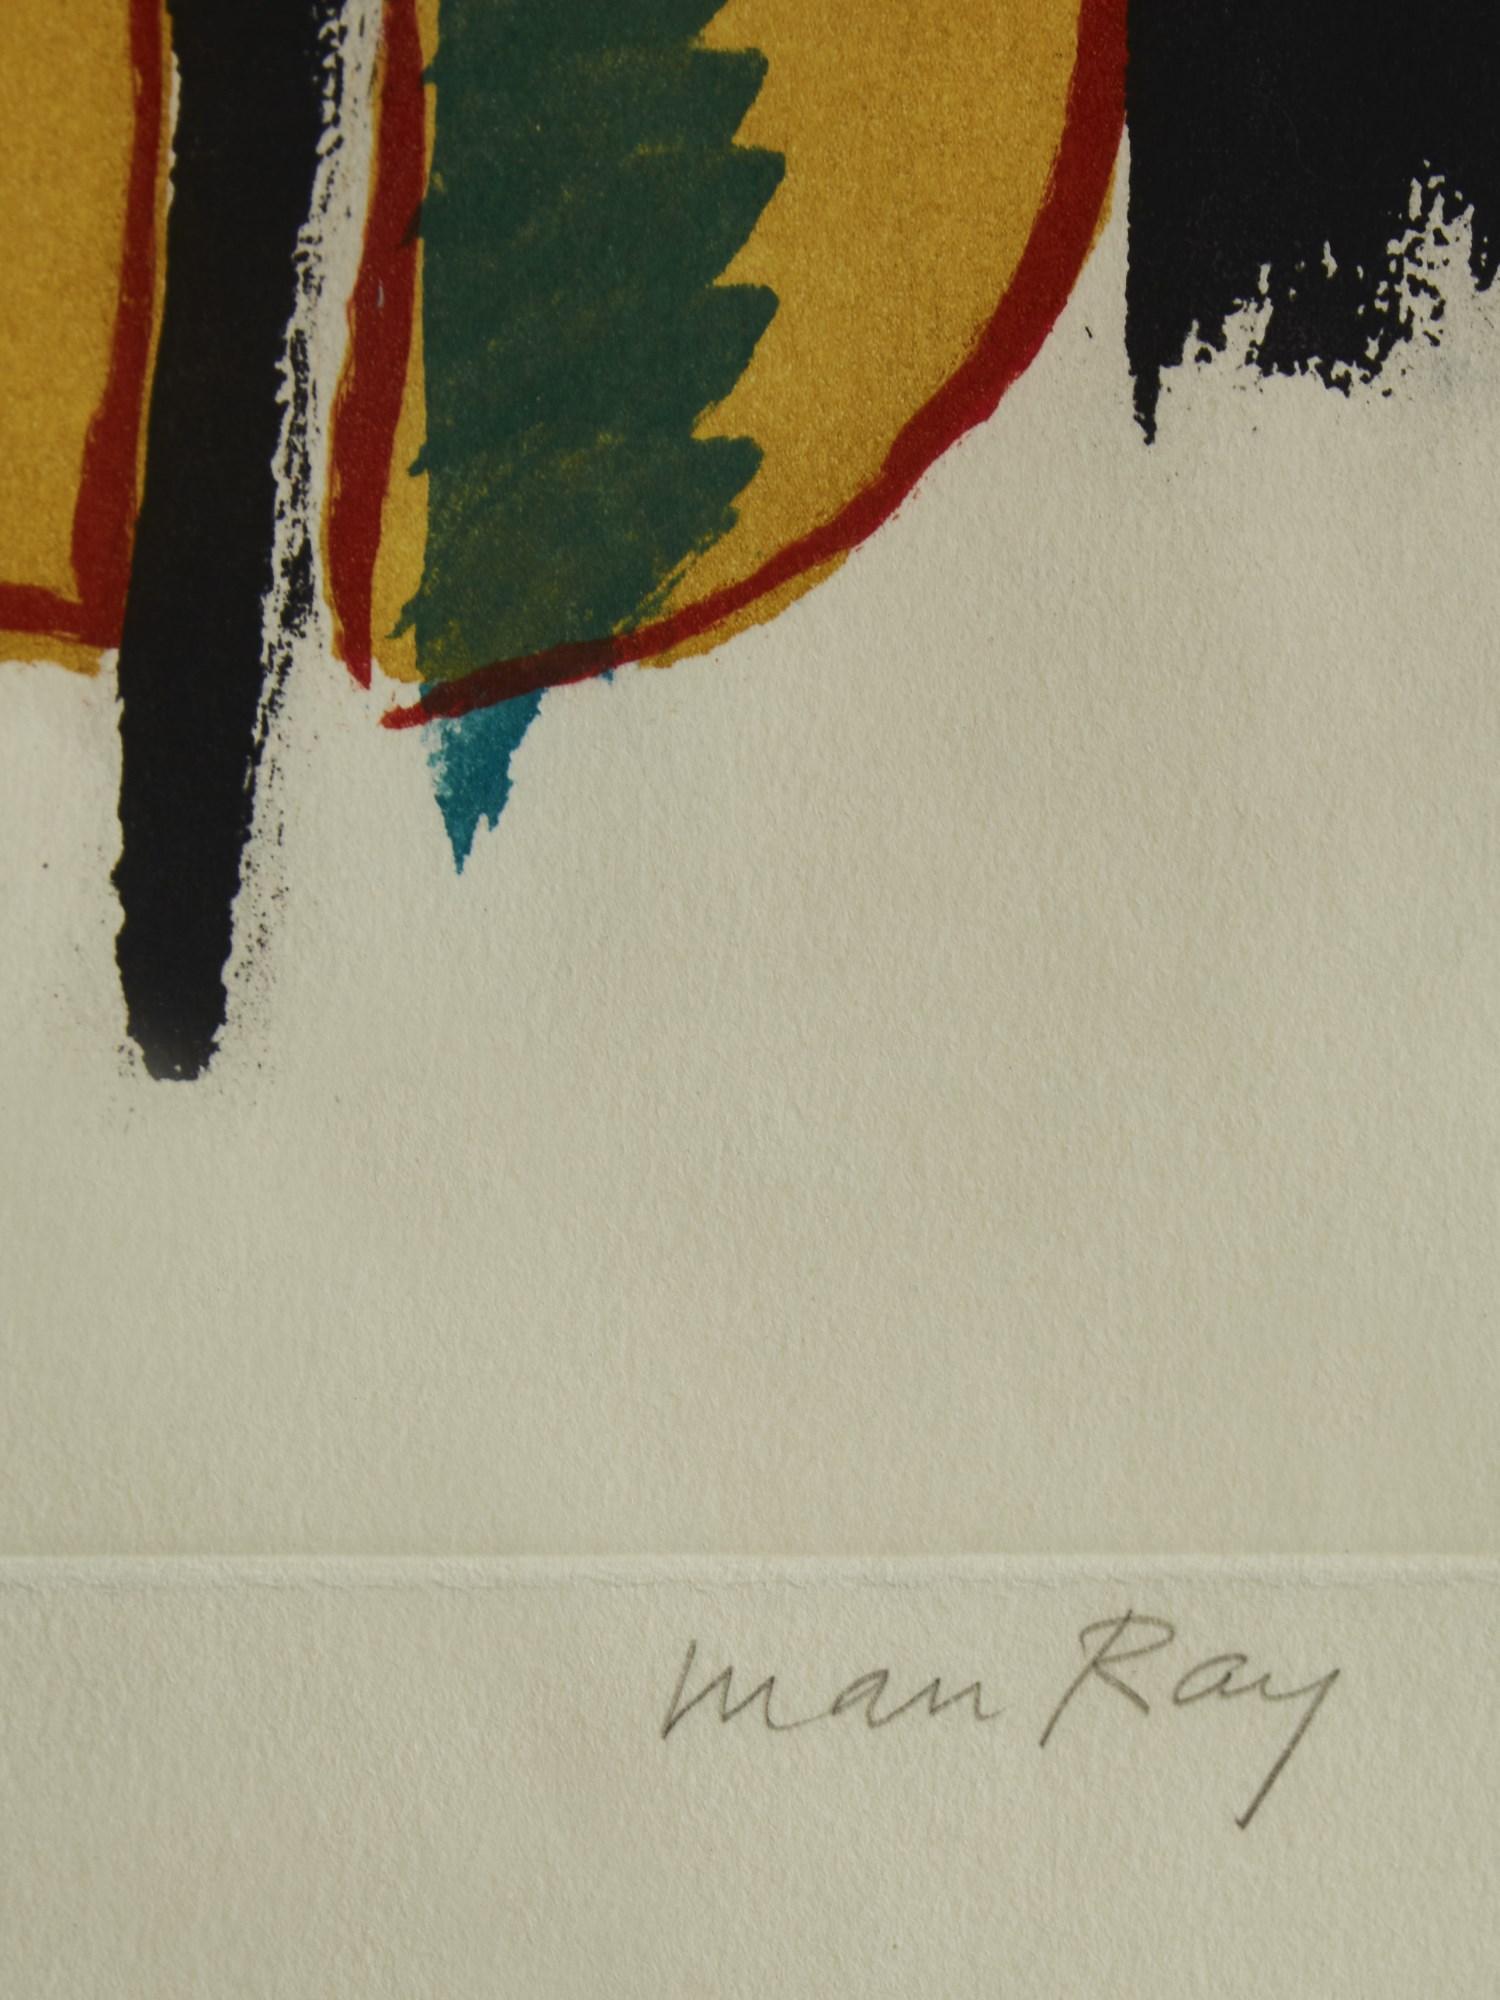 Français Lithographie vintage Man Ray à prix abordable en vente